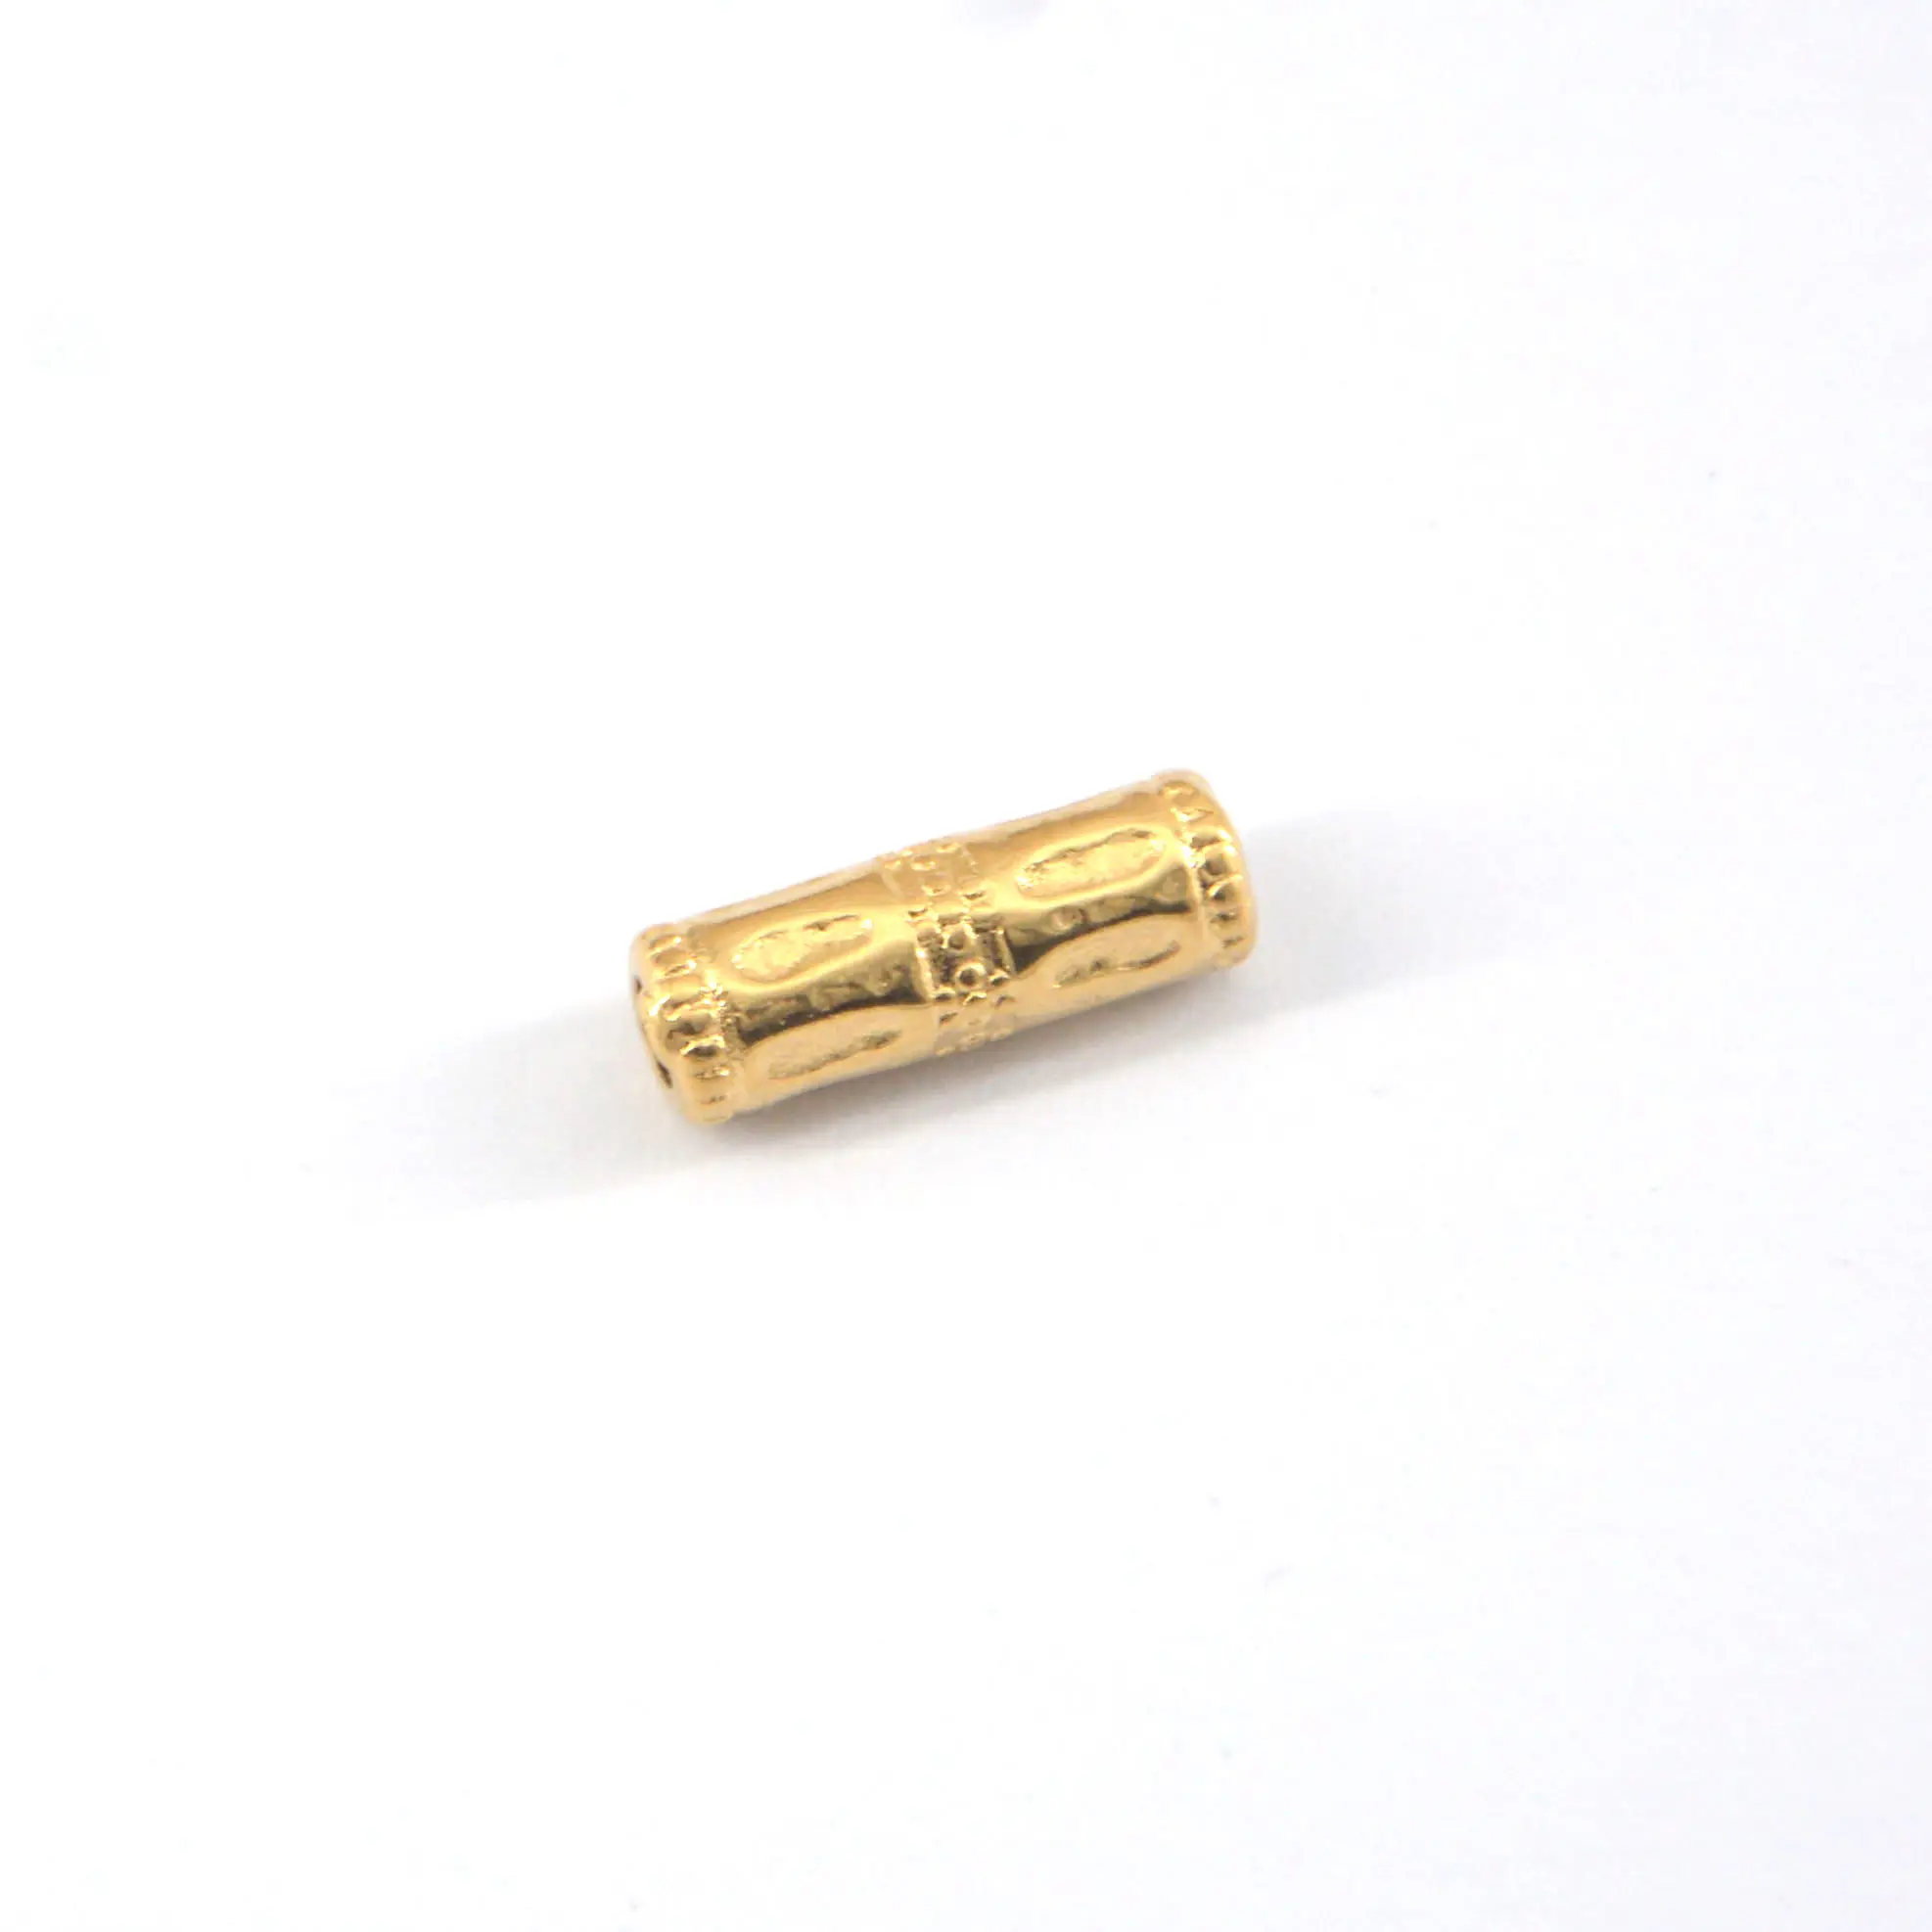 Oluklu boru boncuk 4.5mm x 13 mm uzun yuvarlak paslanmaz çelik boncuk altın kaplama